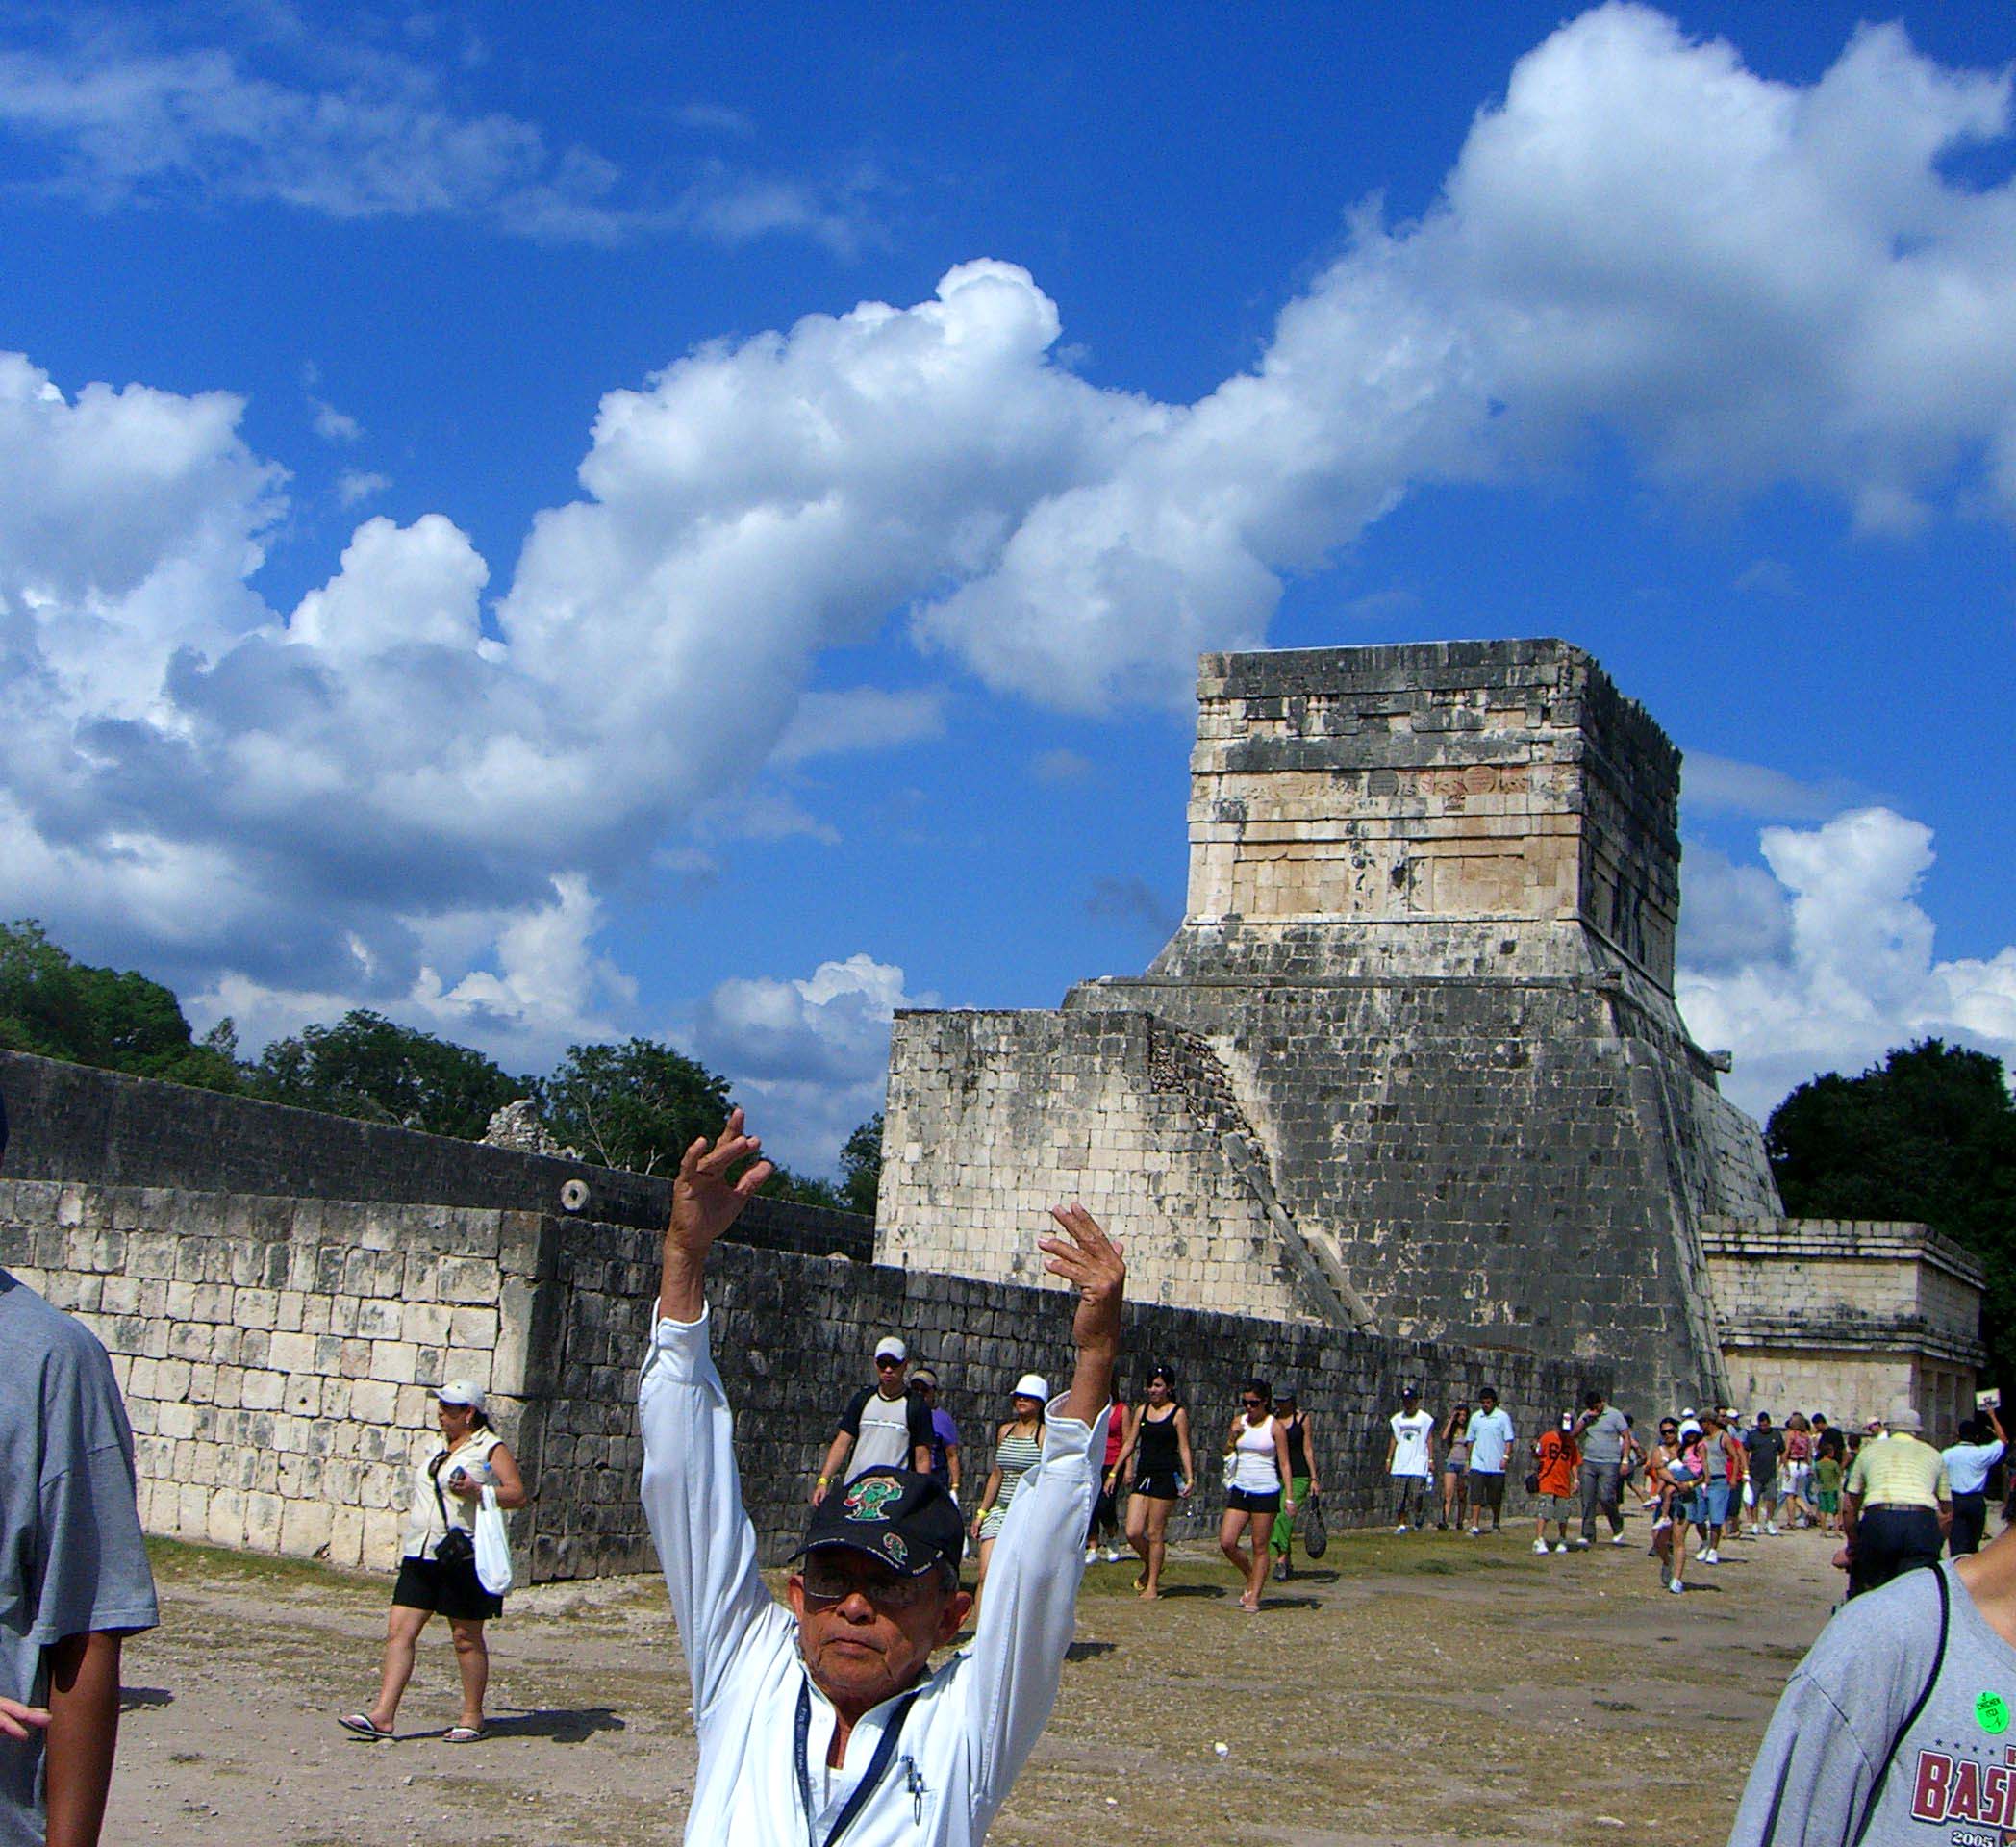 Mayan ball court in Chichen Itza